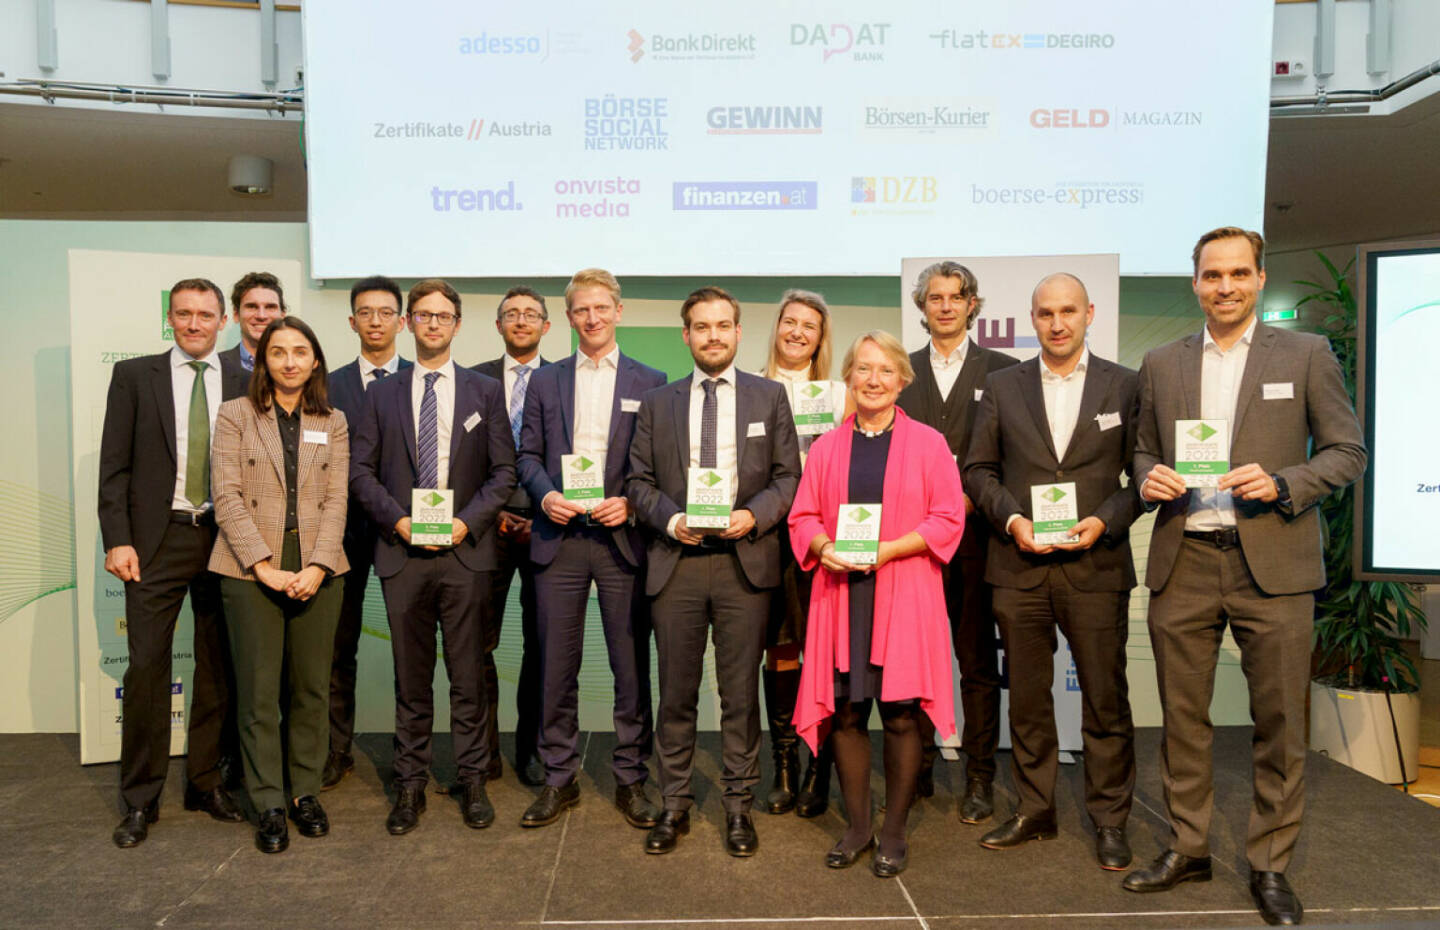 Zertifikate Award 2022: Zum 16. Mal in Folge trägt Raiffeisen Centrobank den Gesamtsieg beim Zertifikate Award Austria davon, Credit: Raiffeisen